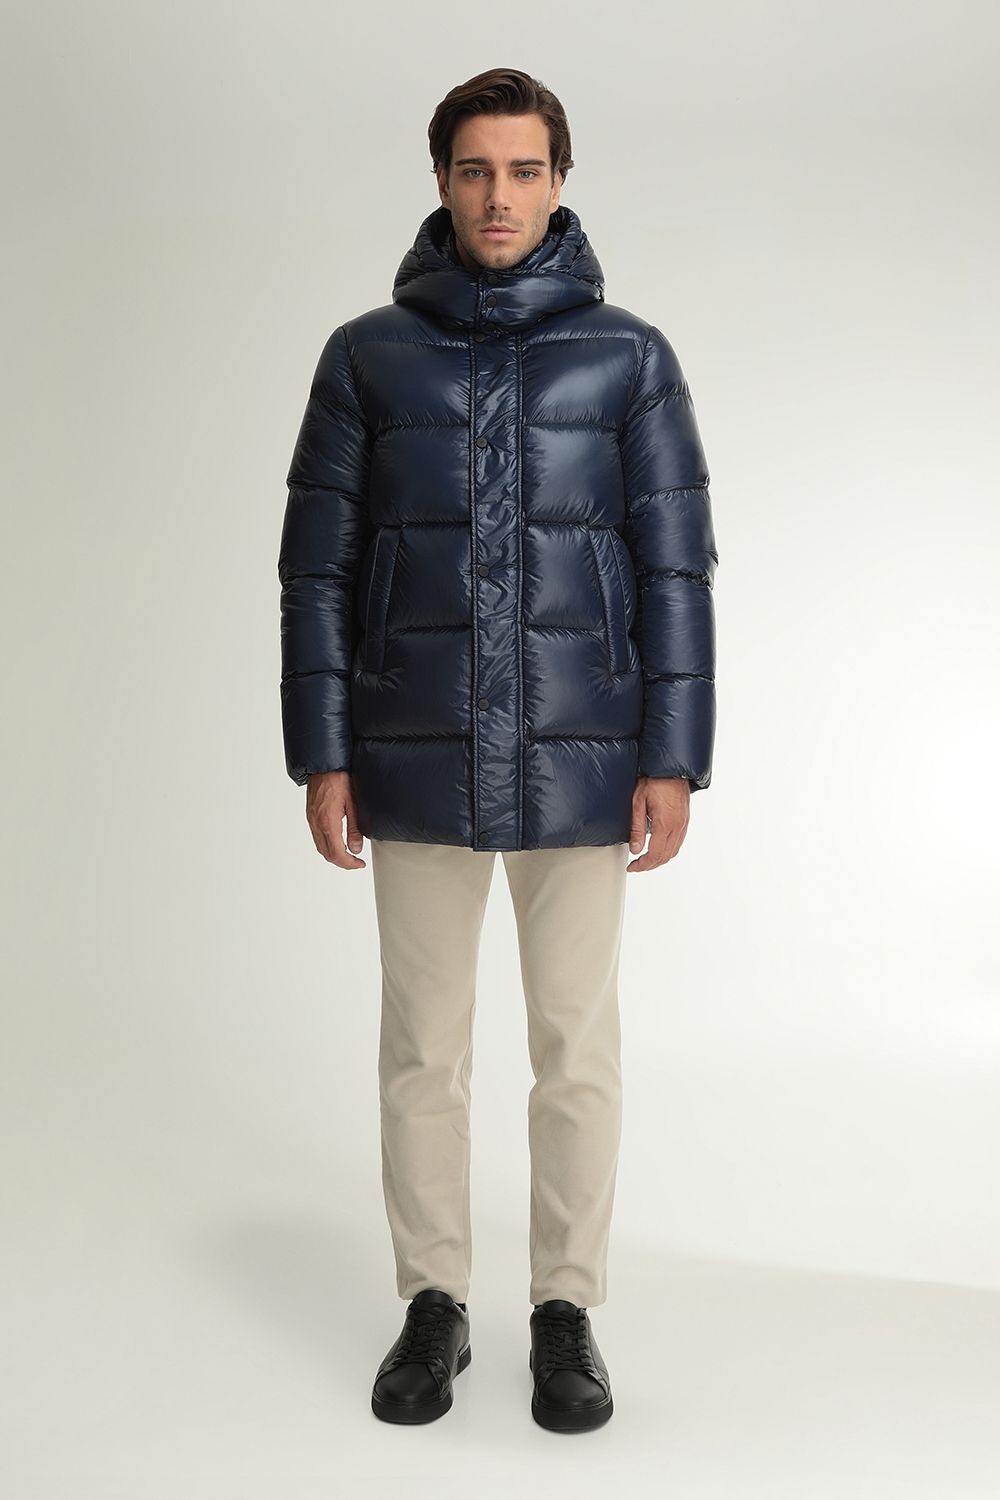 Men's coats Hetregó  Winter Collection 2020-21